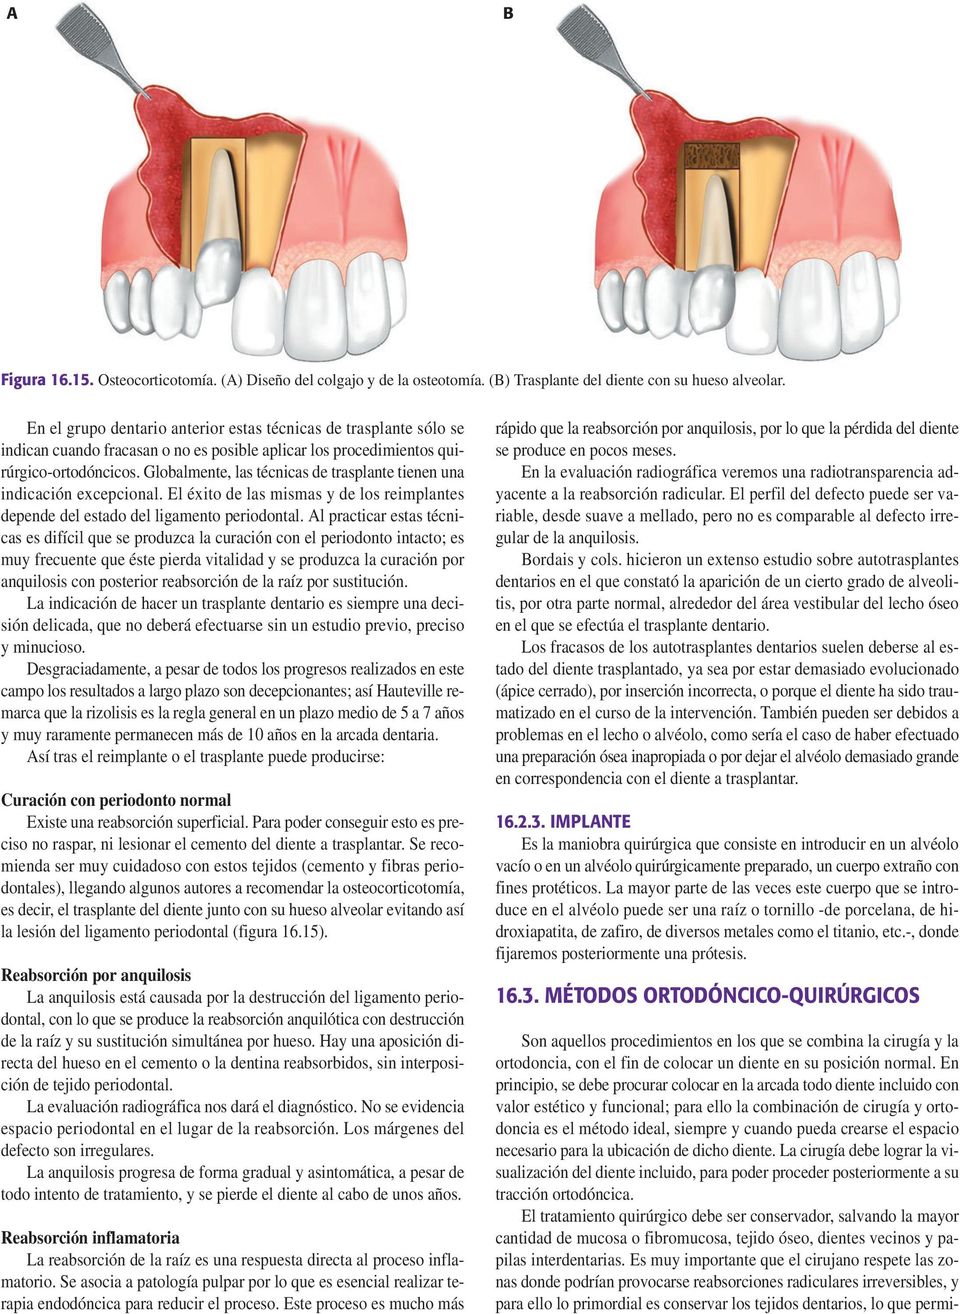 Globalmente, las técnicas de trasplante tienen una indicación excepcional. El éxito de las mismas y de los reimplantes depende del estado del ligamento periodontal.